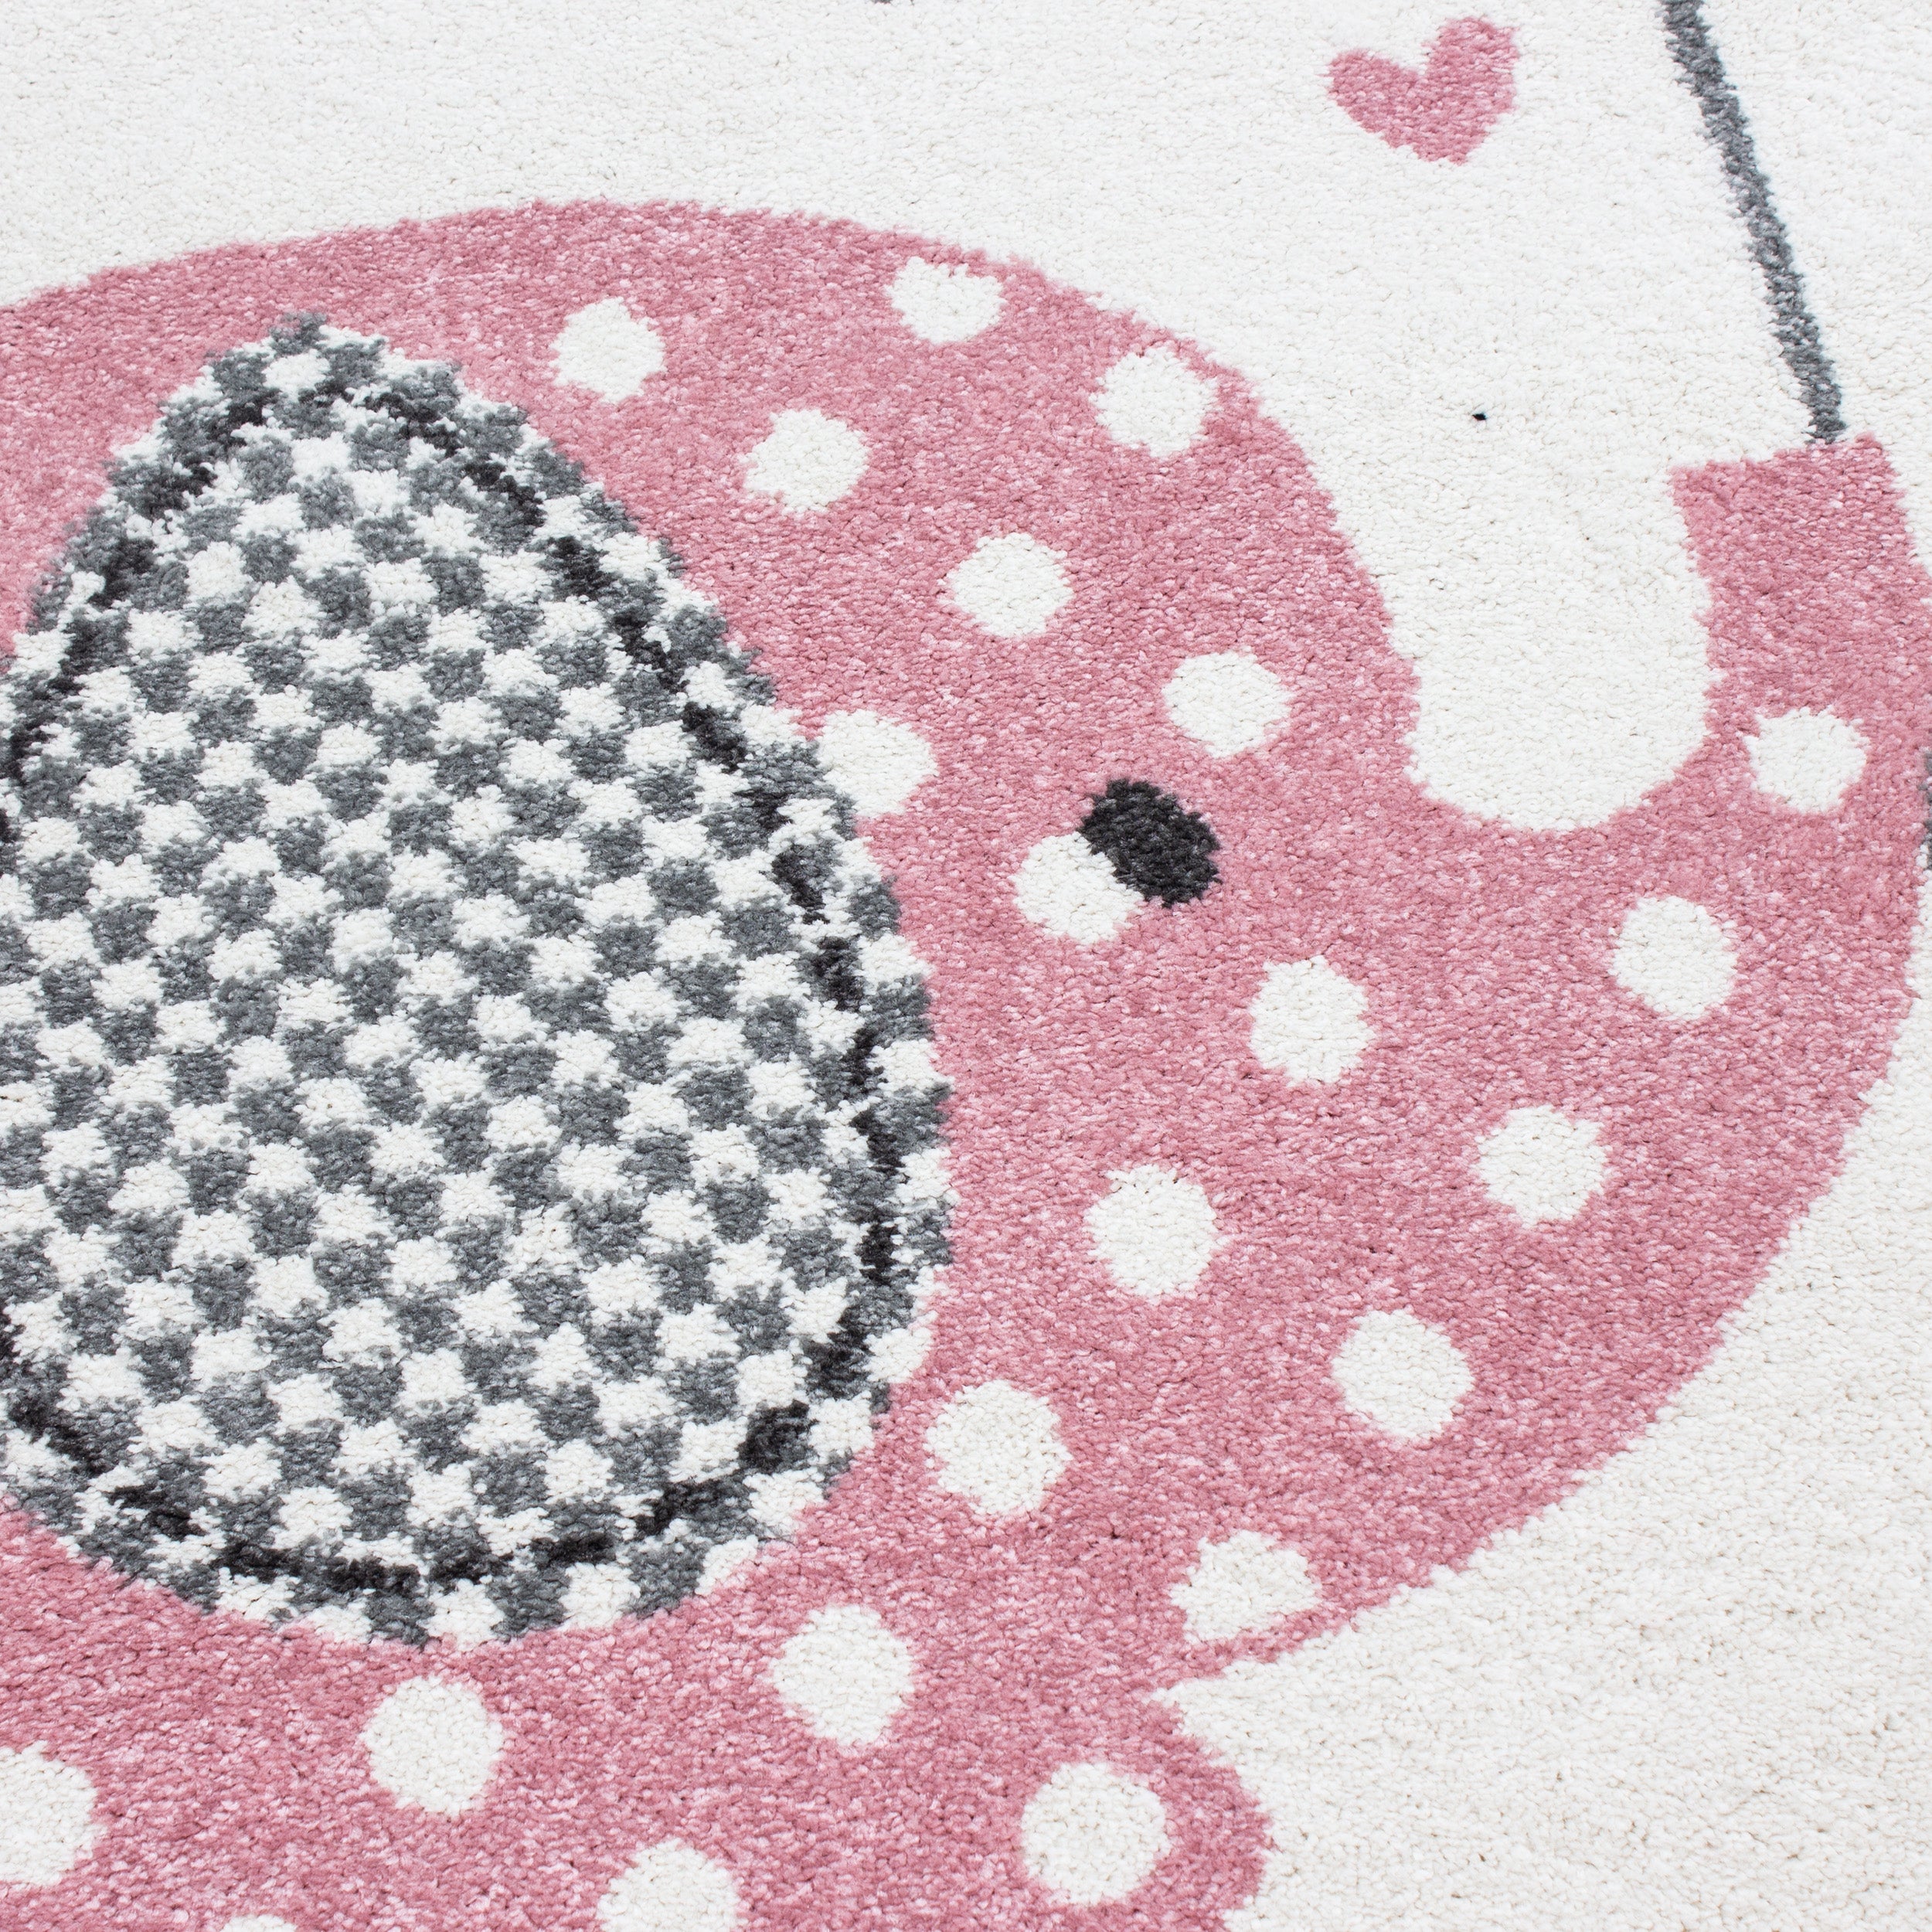 Kurzflor Kinderteppich Elefant mit Regenschirm Babyzimmer Teppich Grau Rosa